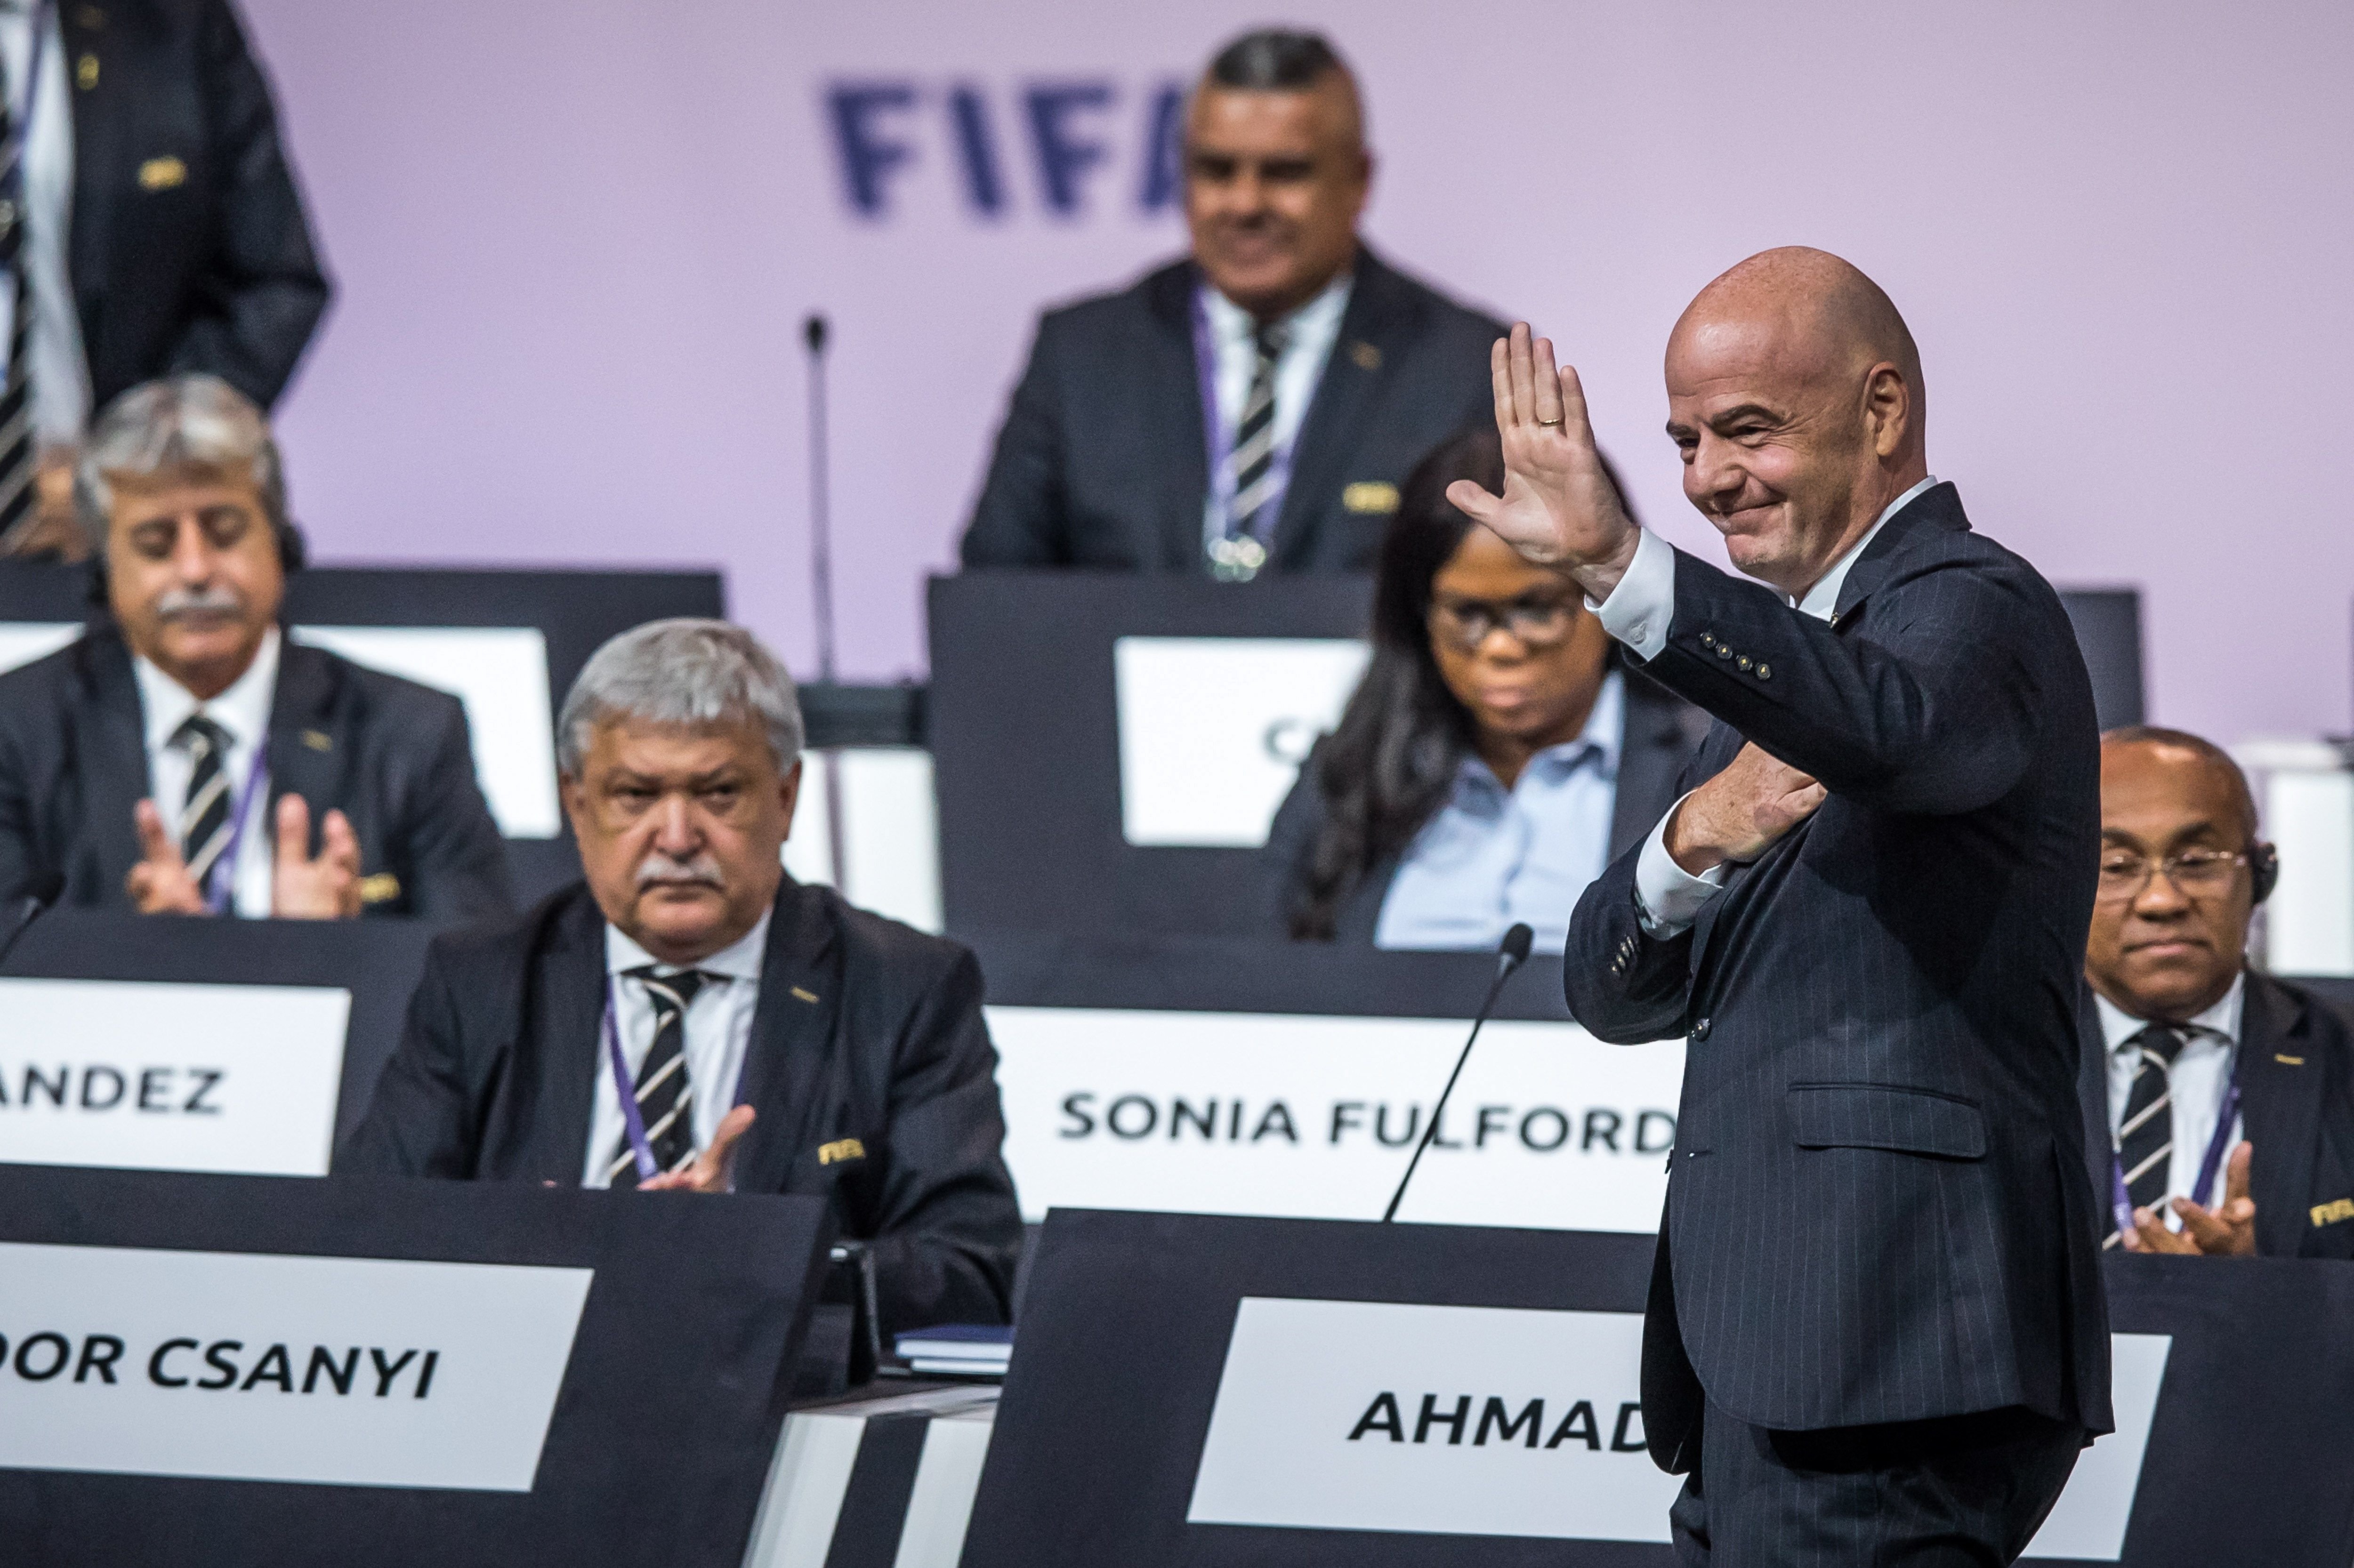 El vergonzoso argumento de la FIFA para su Mundial bianual: desalentaría la emigración africana a Europa